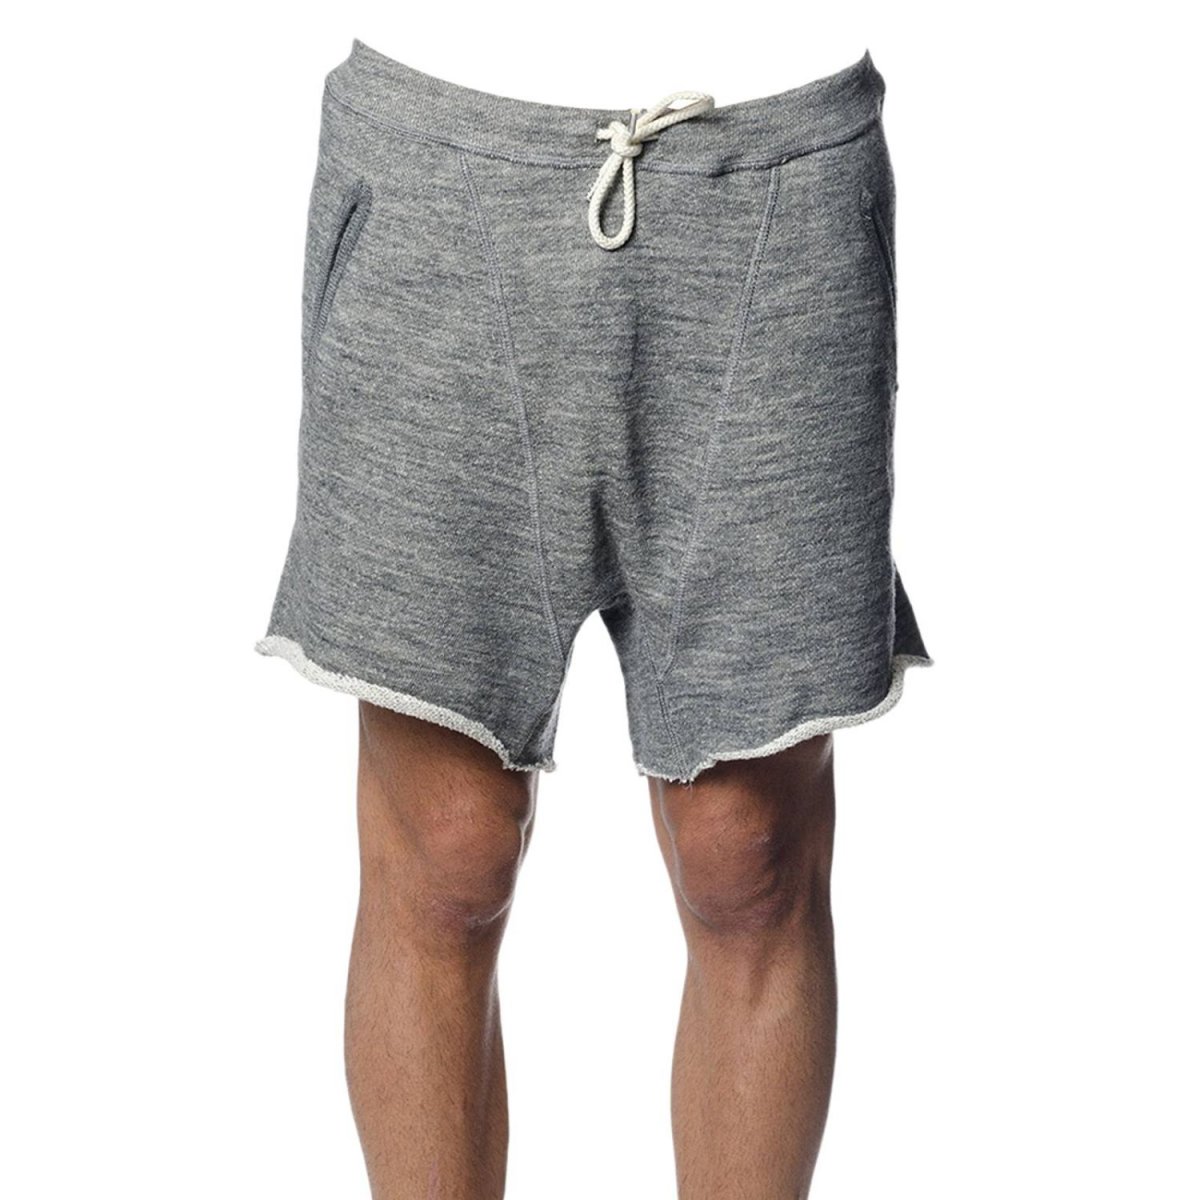 Levis 501 shorts men outfit